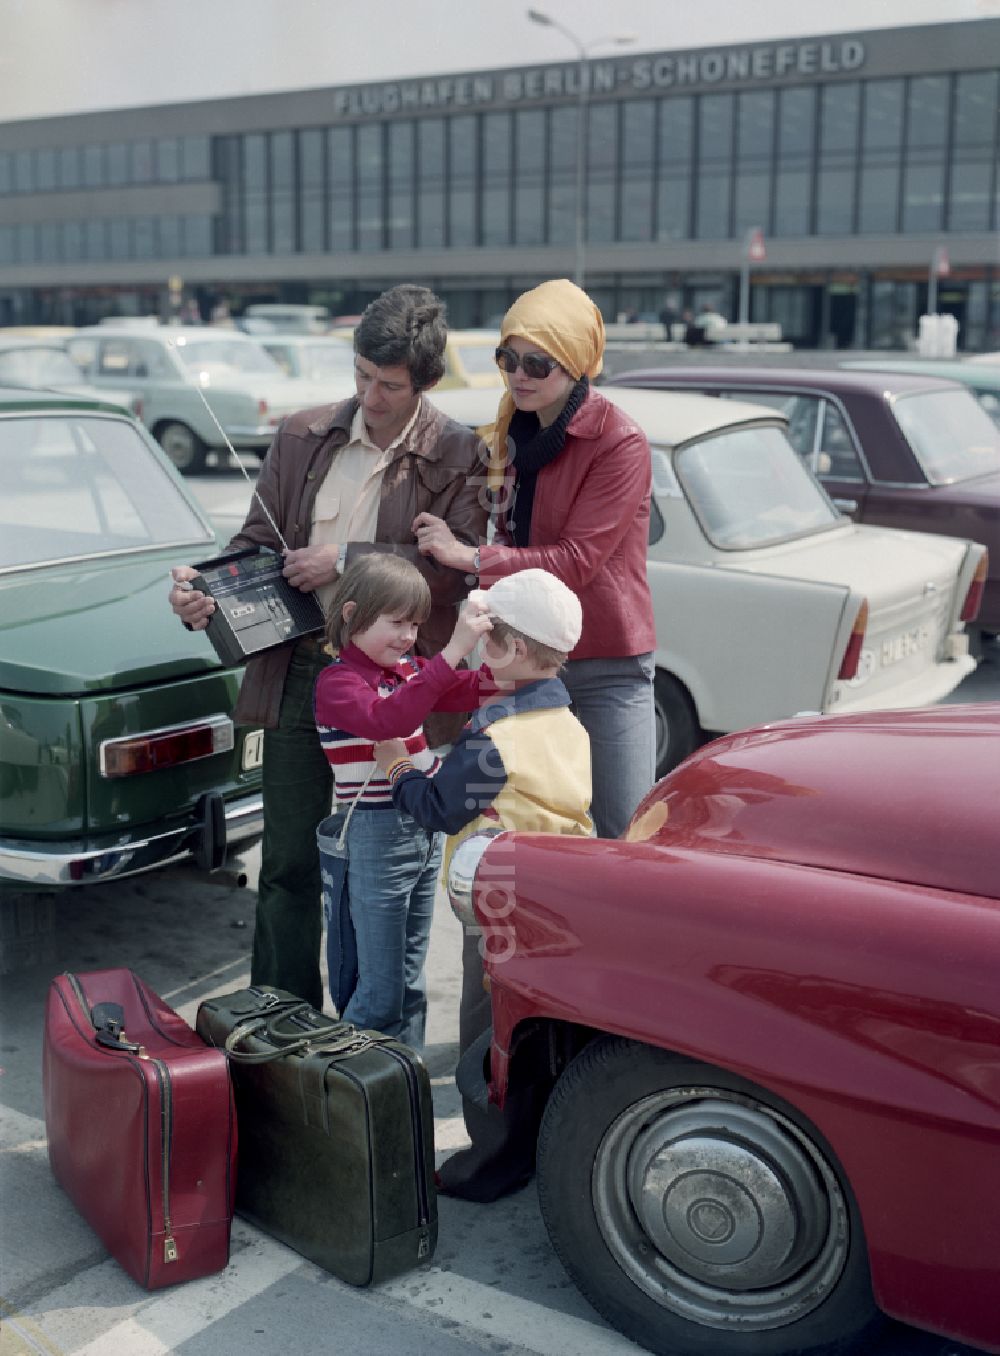 DDR-Fotoarchiv: Schönefeld - Familie am FlughafenSchönefeld in Brandenburg in der DDR